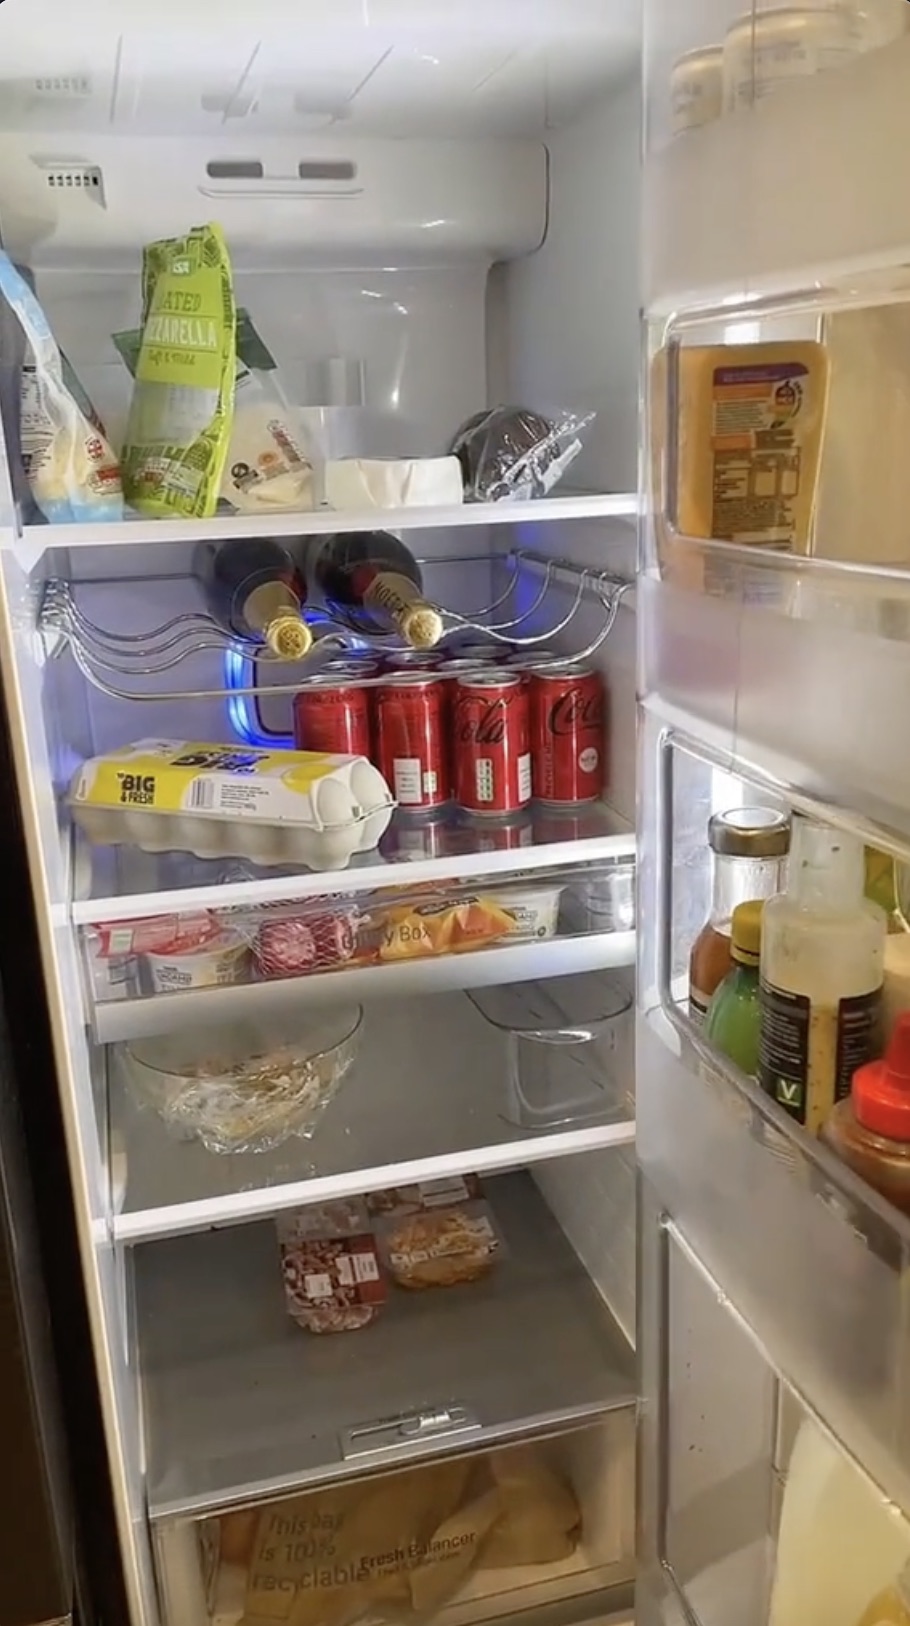 Die Tür lässt sich vollständig öffnen, sodass der Besitzer auch Zugriff auf den gesamten Kühlschrank hat